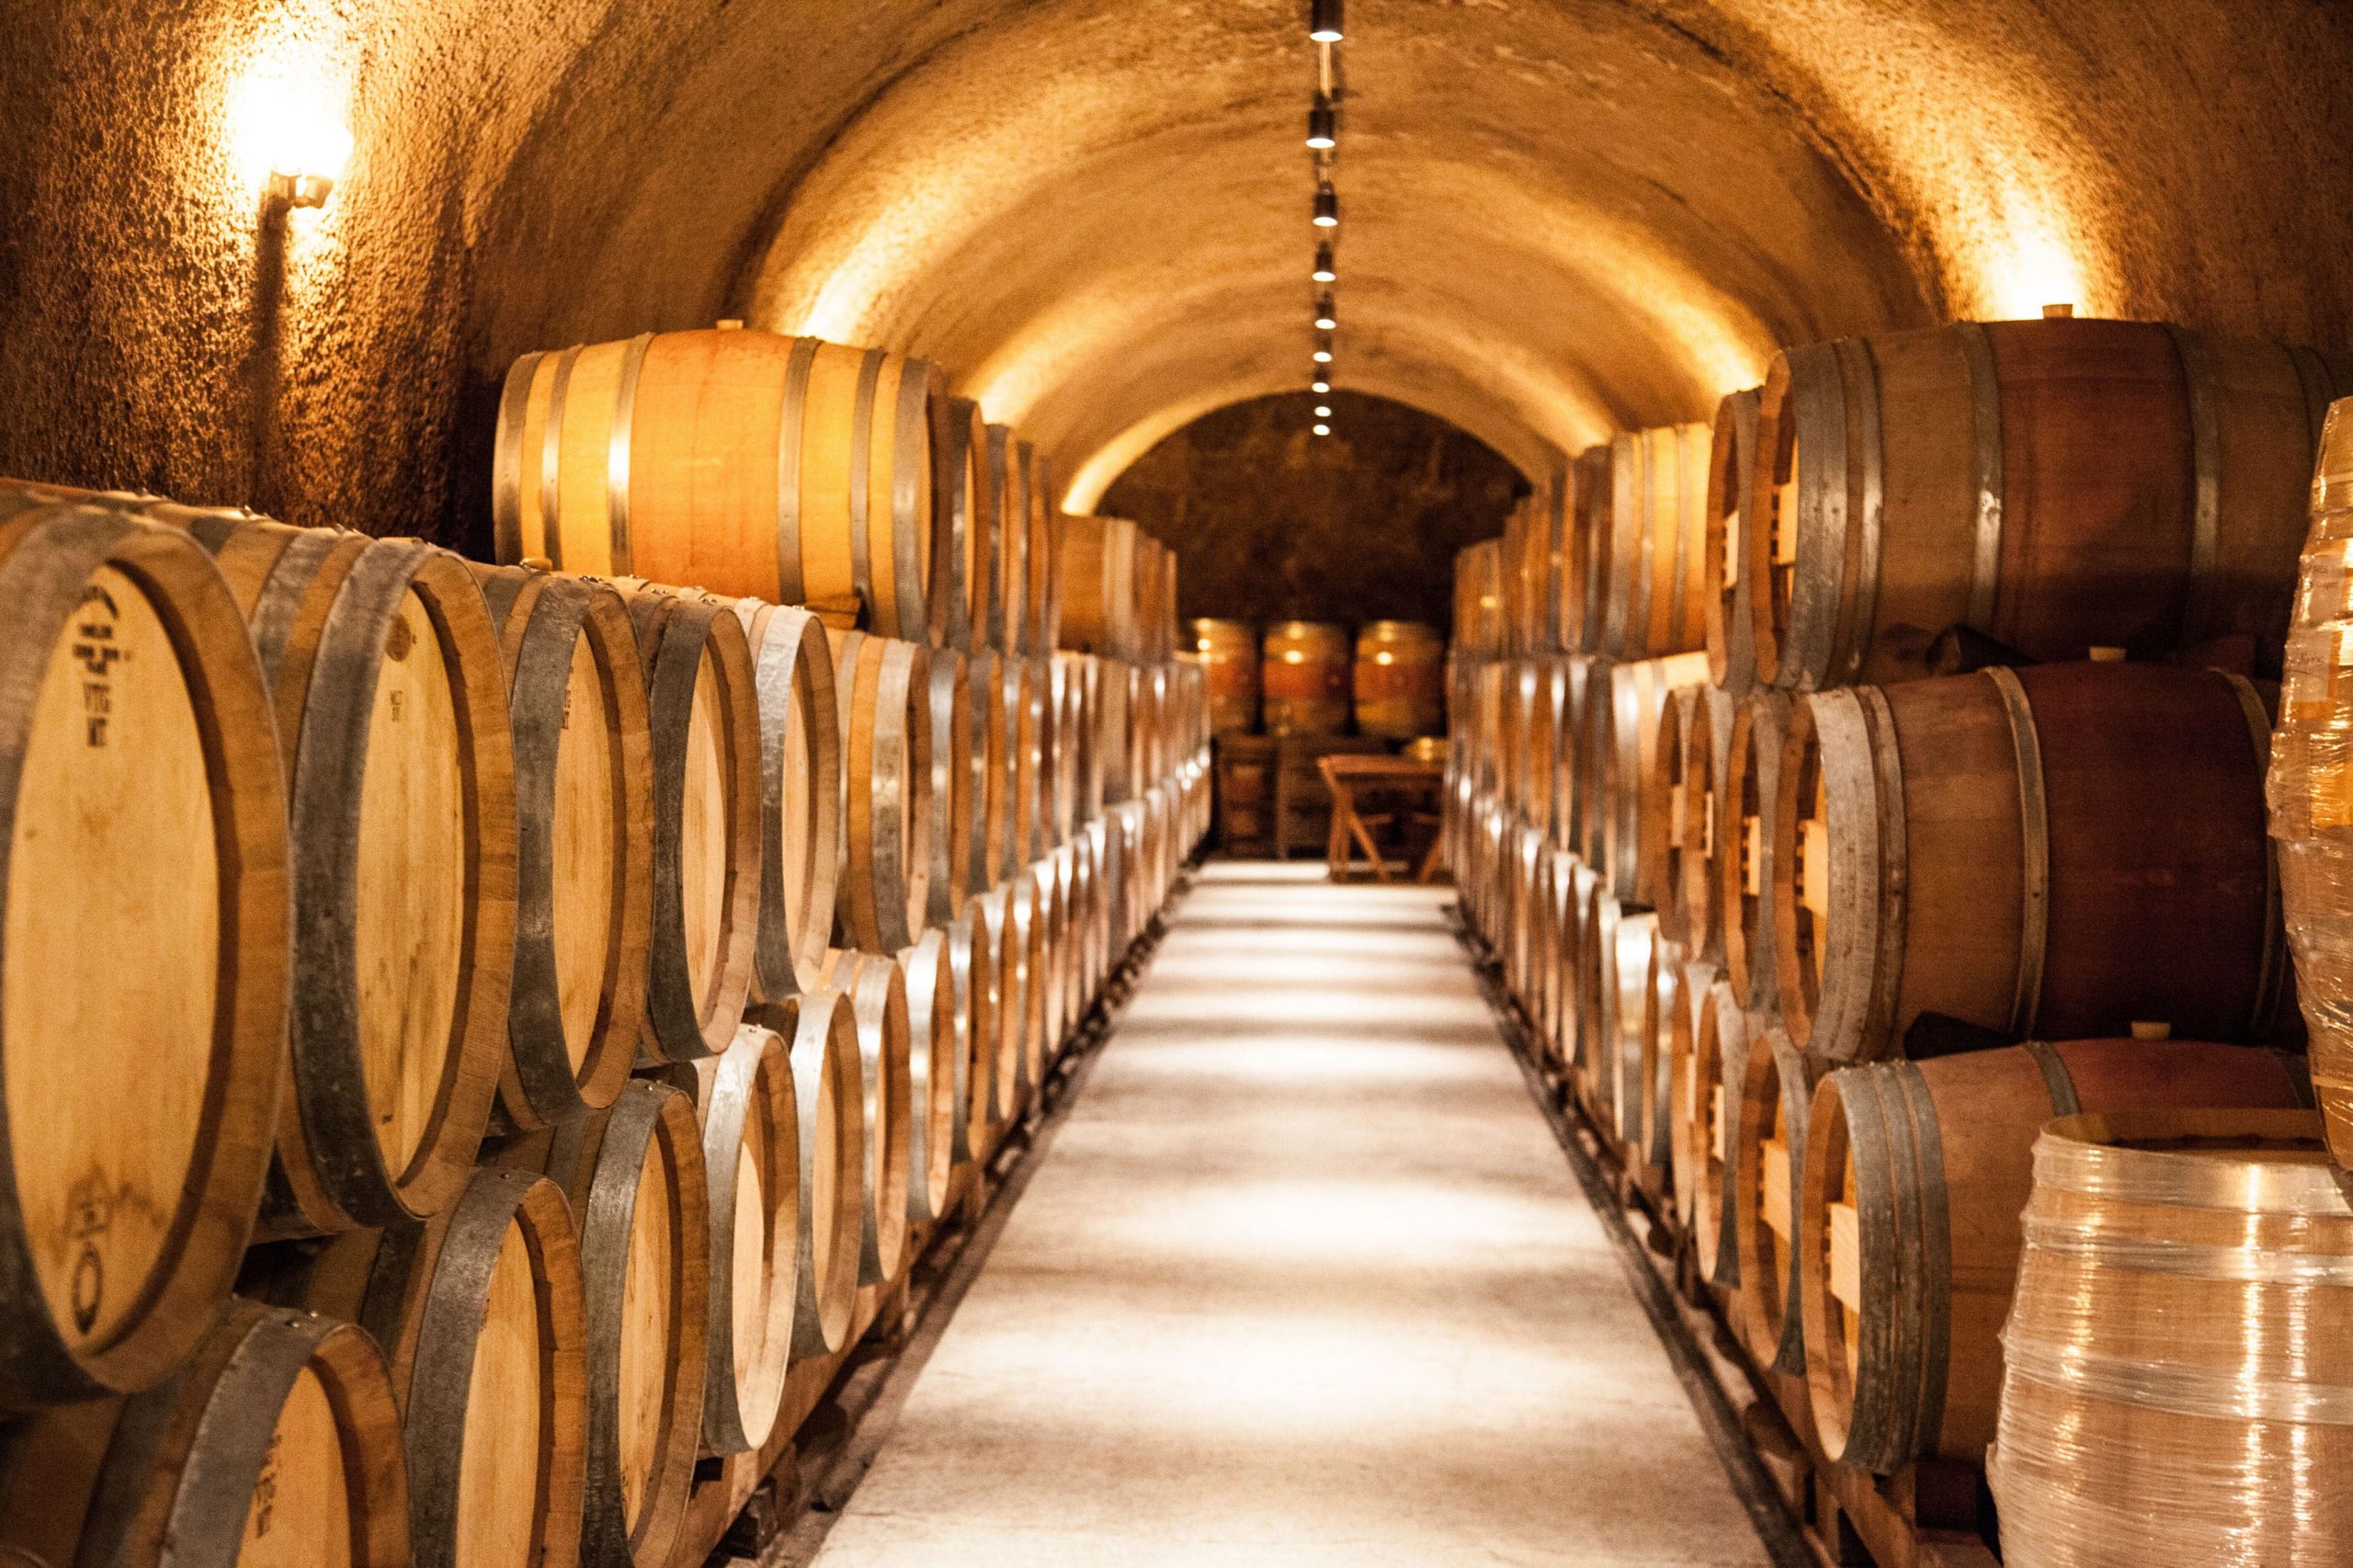 Wine aging in barrels in a wine cellar.